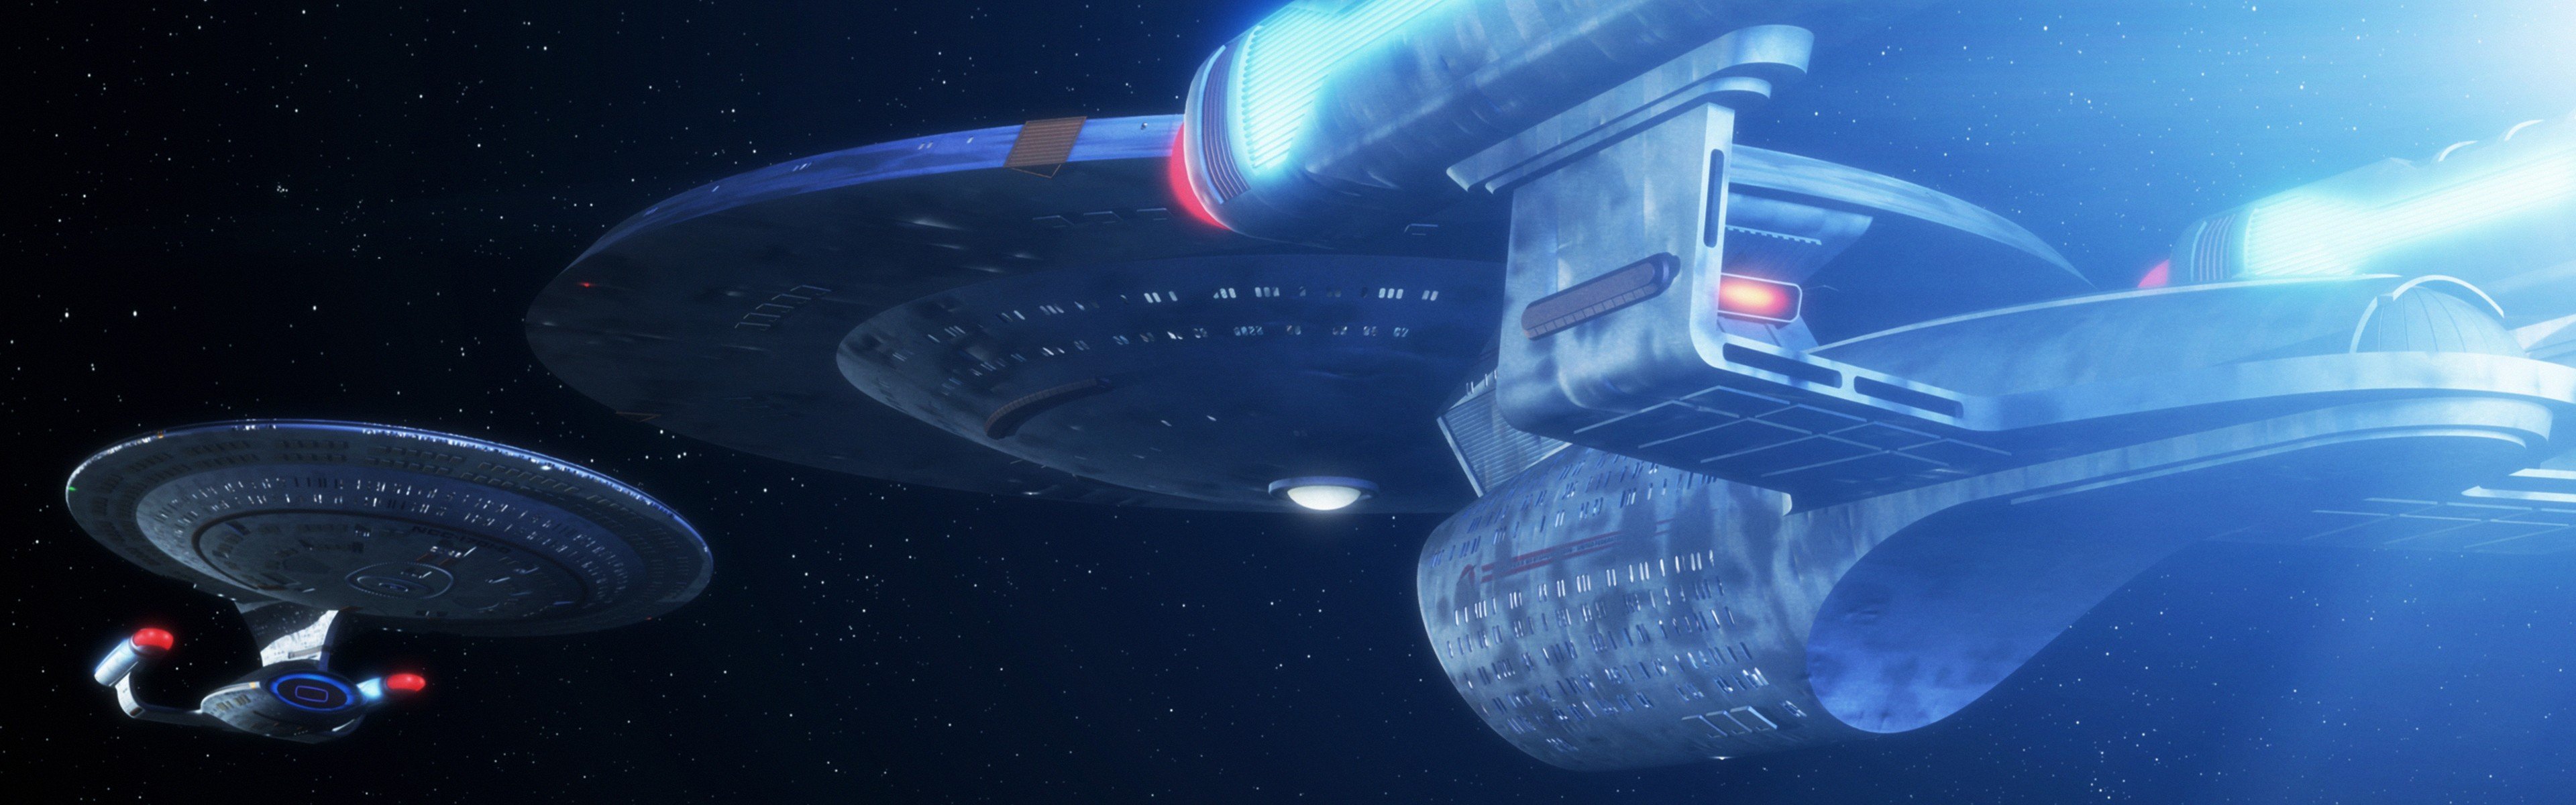 Star Trek, USS Enterprise (spaceship), Dual monitors, Multiple display